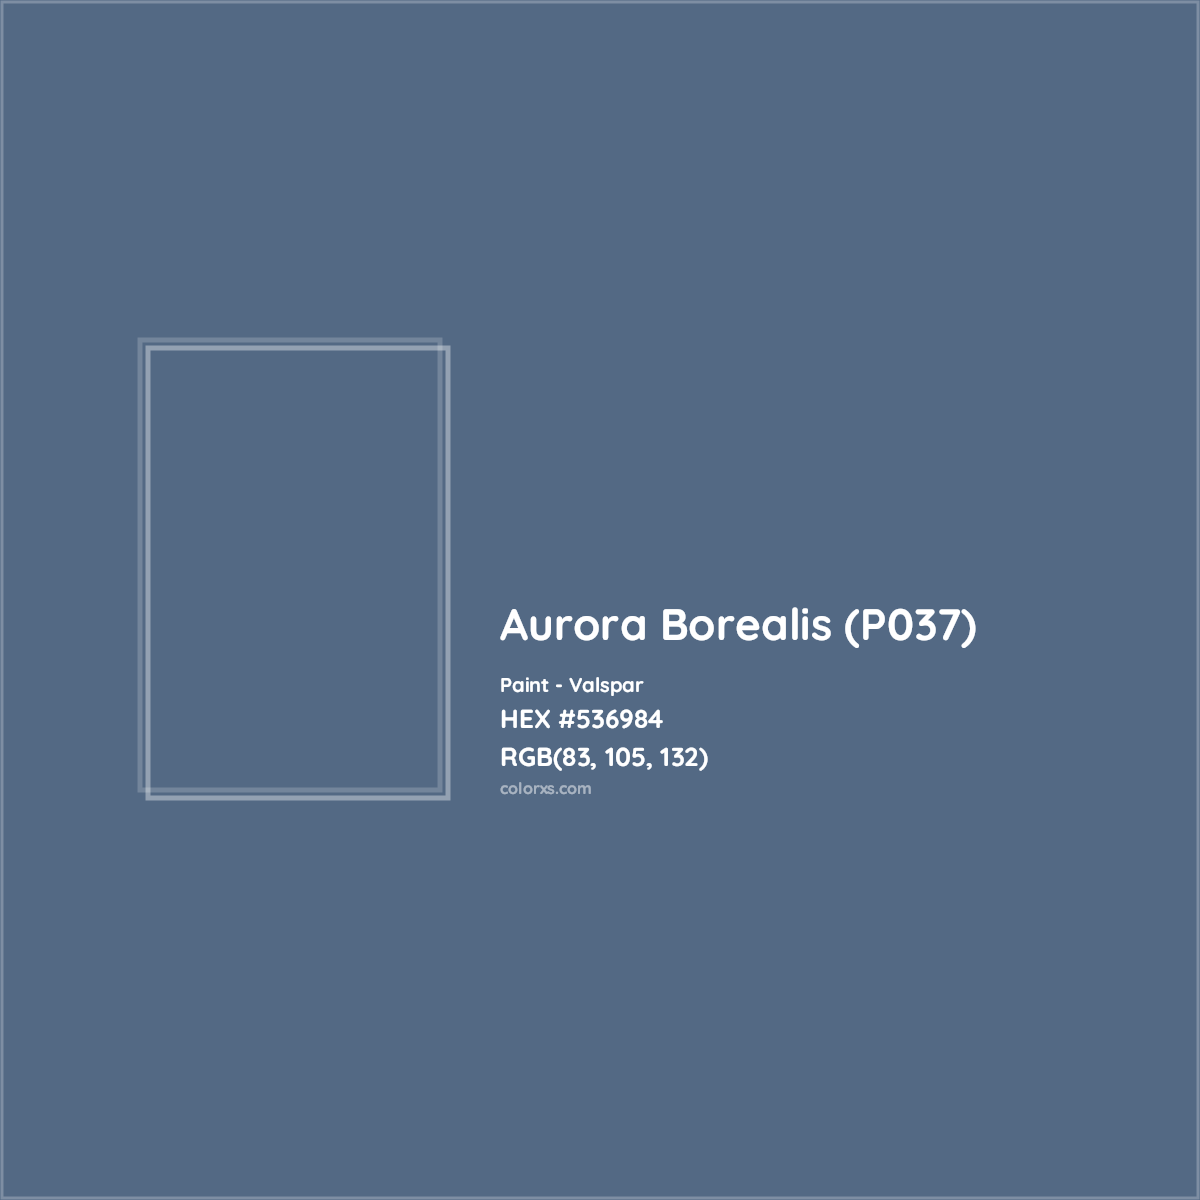 HEX #536984 Aurora Borealis (P037) Paint Valspar - Color Code